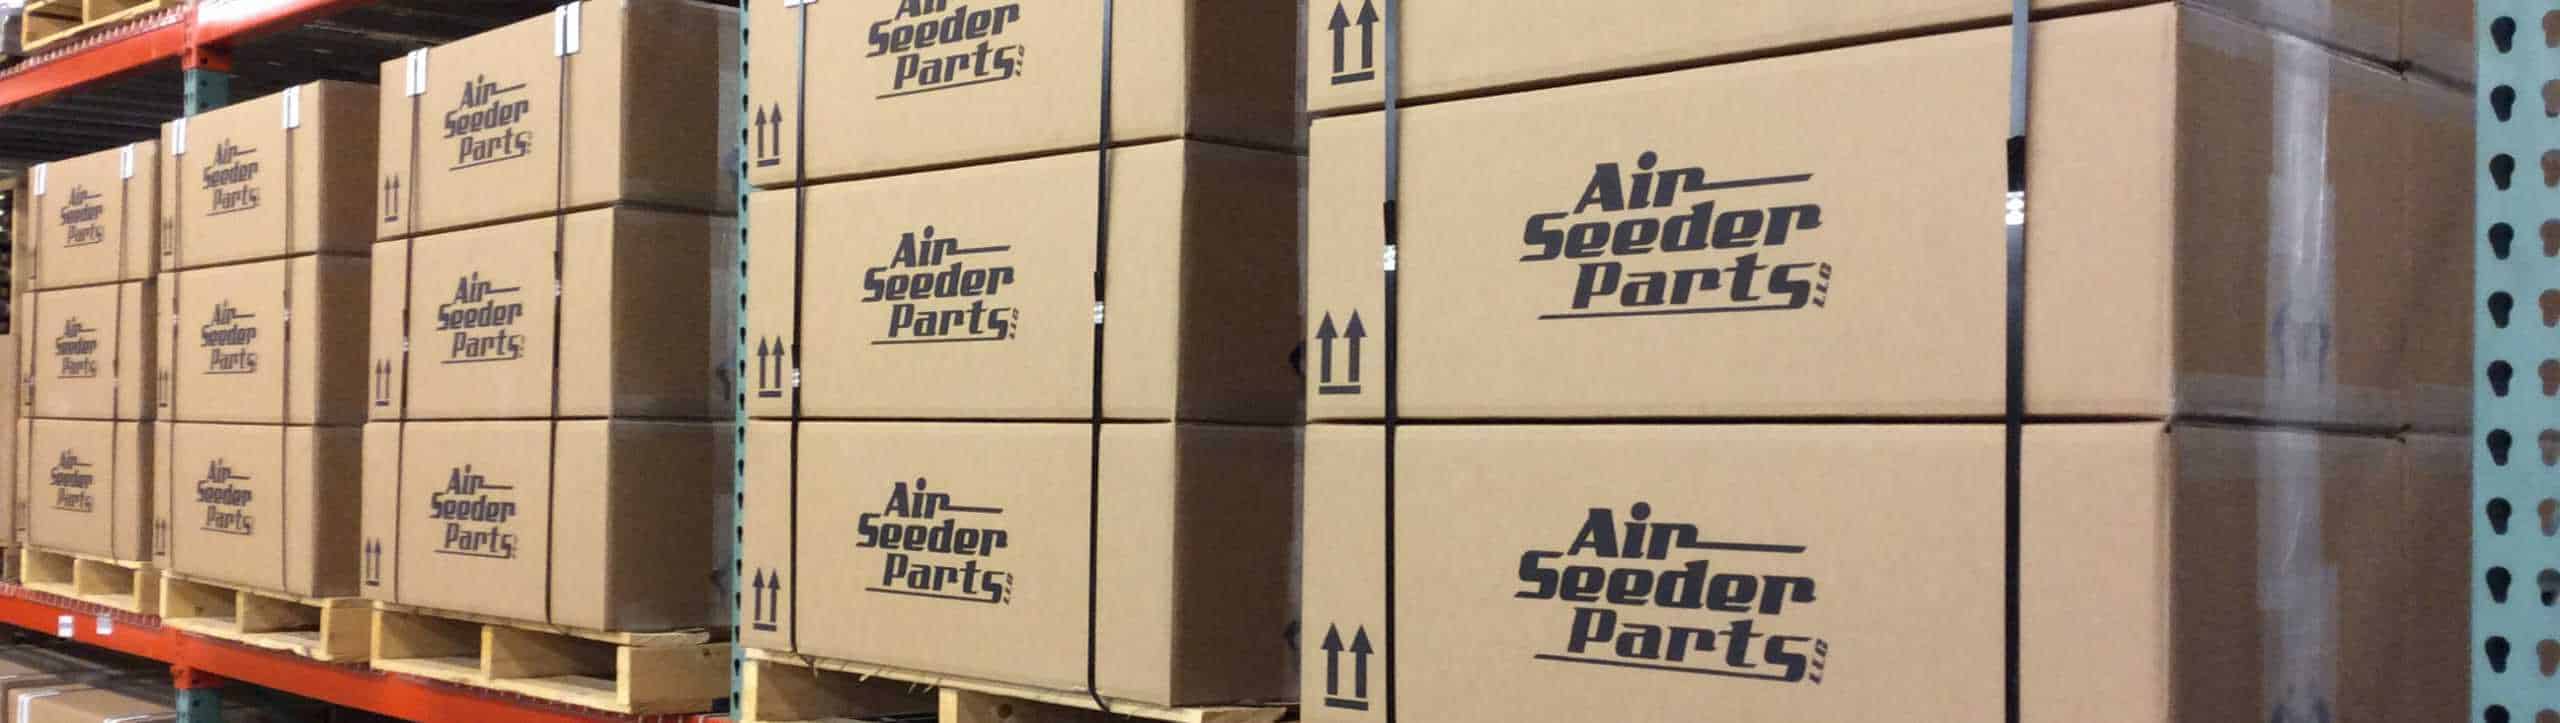 Air Seeder Parts Shipment